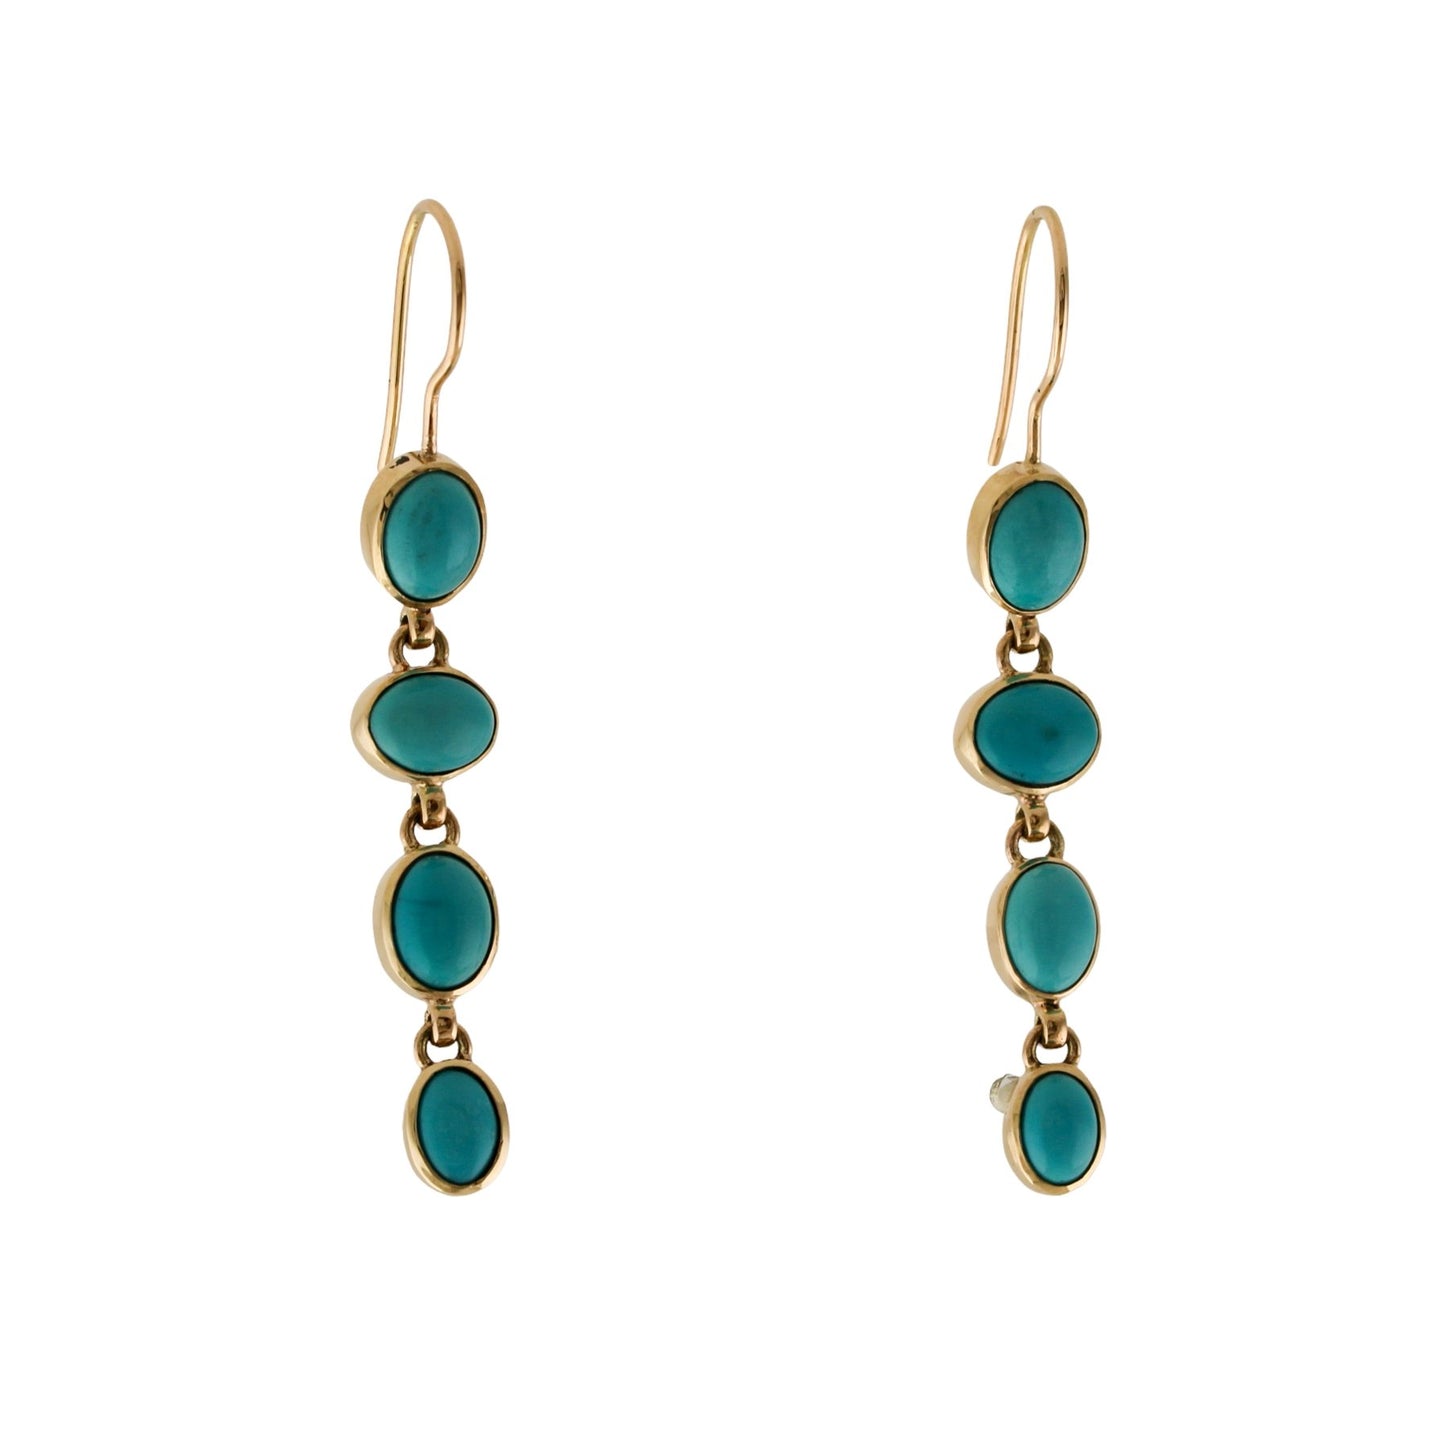 Sleeping Beauty Turquoise Drop Earrings - Kingdom Jewelry